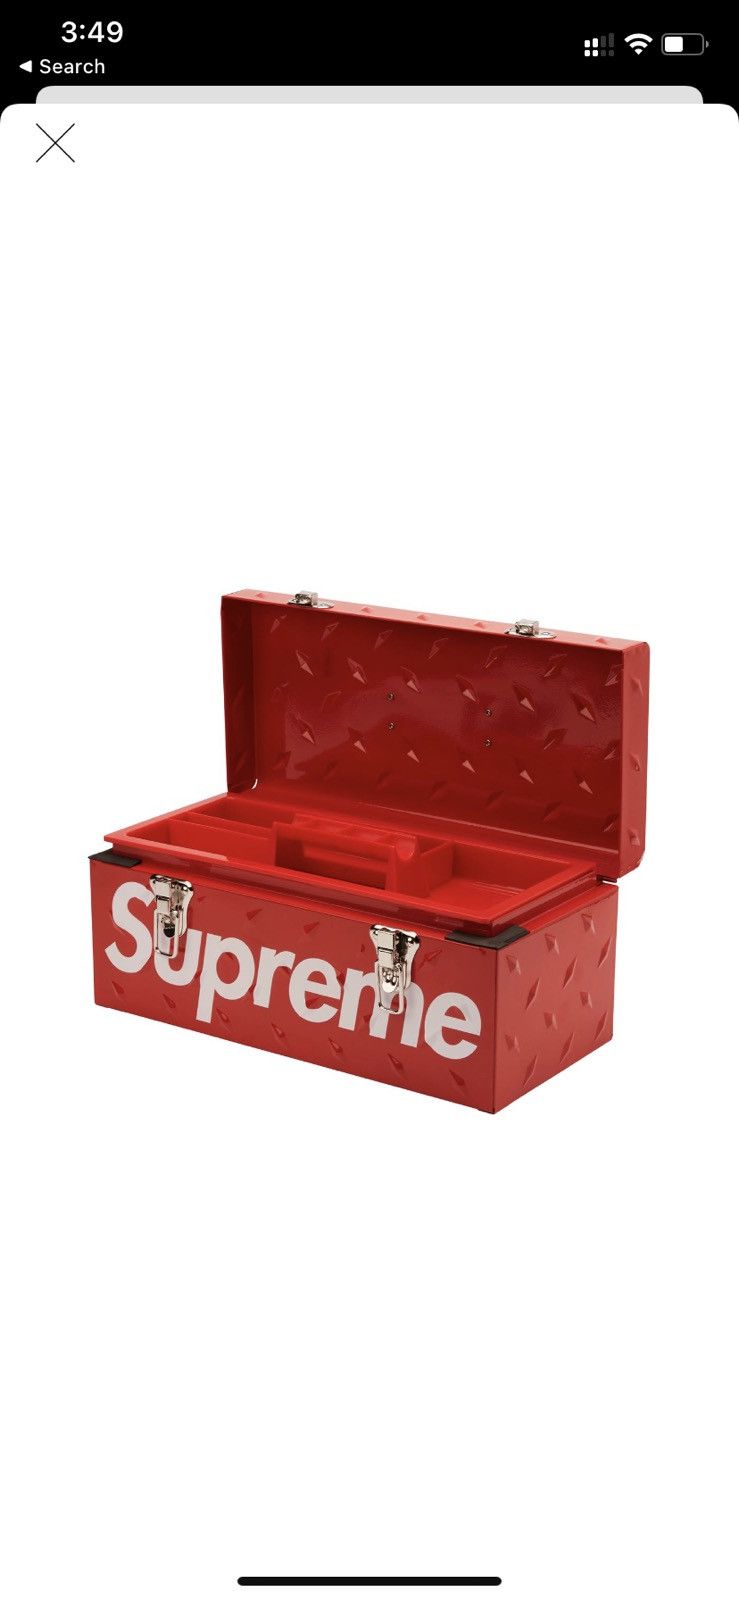 Supreme Supreme Diamond Plate Tool Box | Grailed